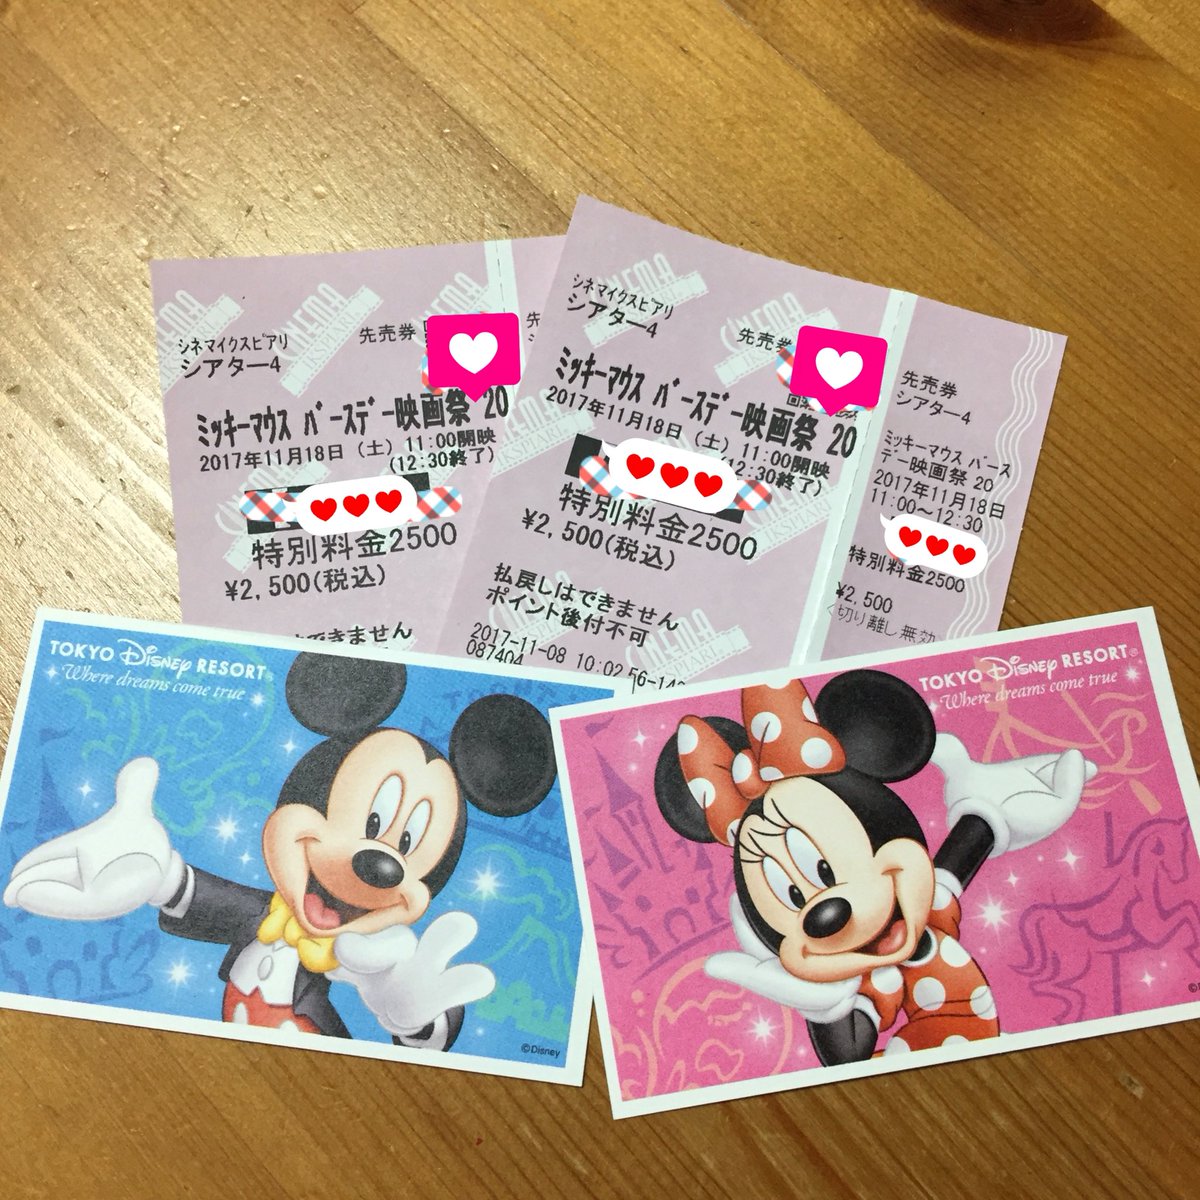 Kiyomi ミッキーマウス バースデー 映画祭17 チケット取れたっ ミッキー バースデーの日付け指定パスポートも取れたっ そして肝心の有給も取れた O O ミッキー映画祭 チケット取れた ワンデーパスポート